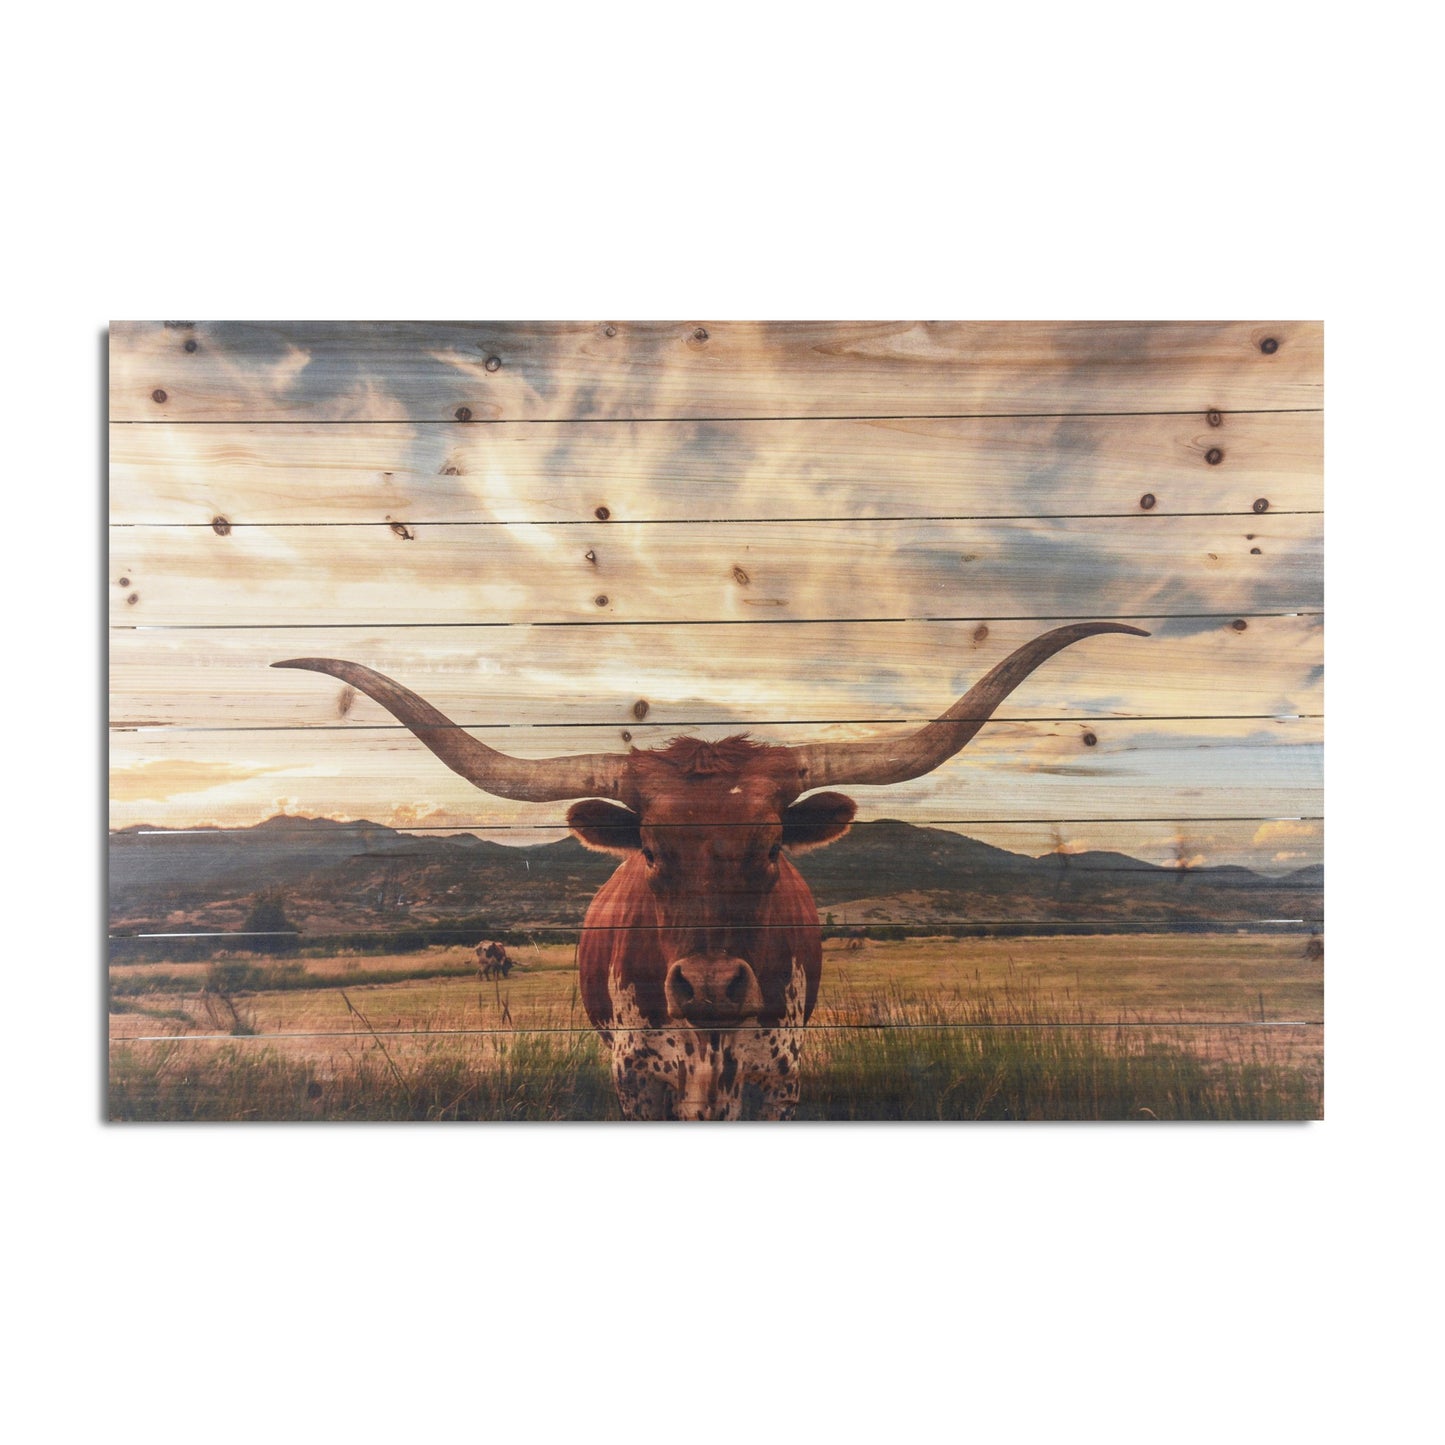 Longhorn Cow in Field Wood Plank Wall Art